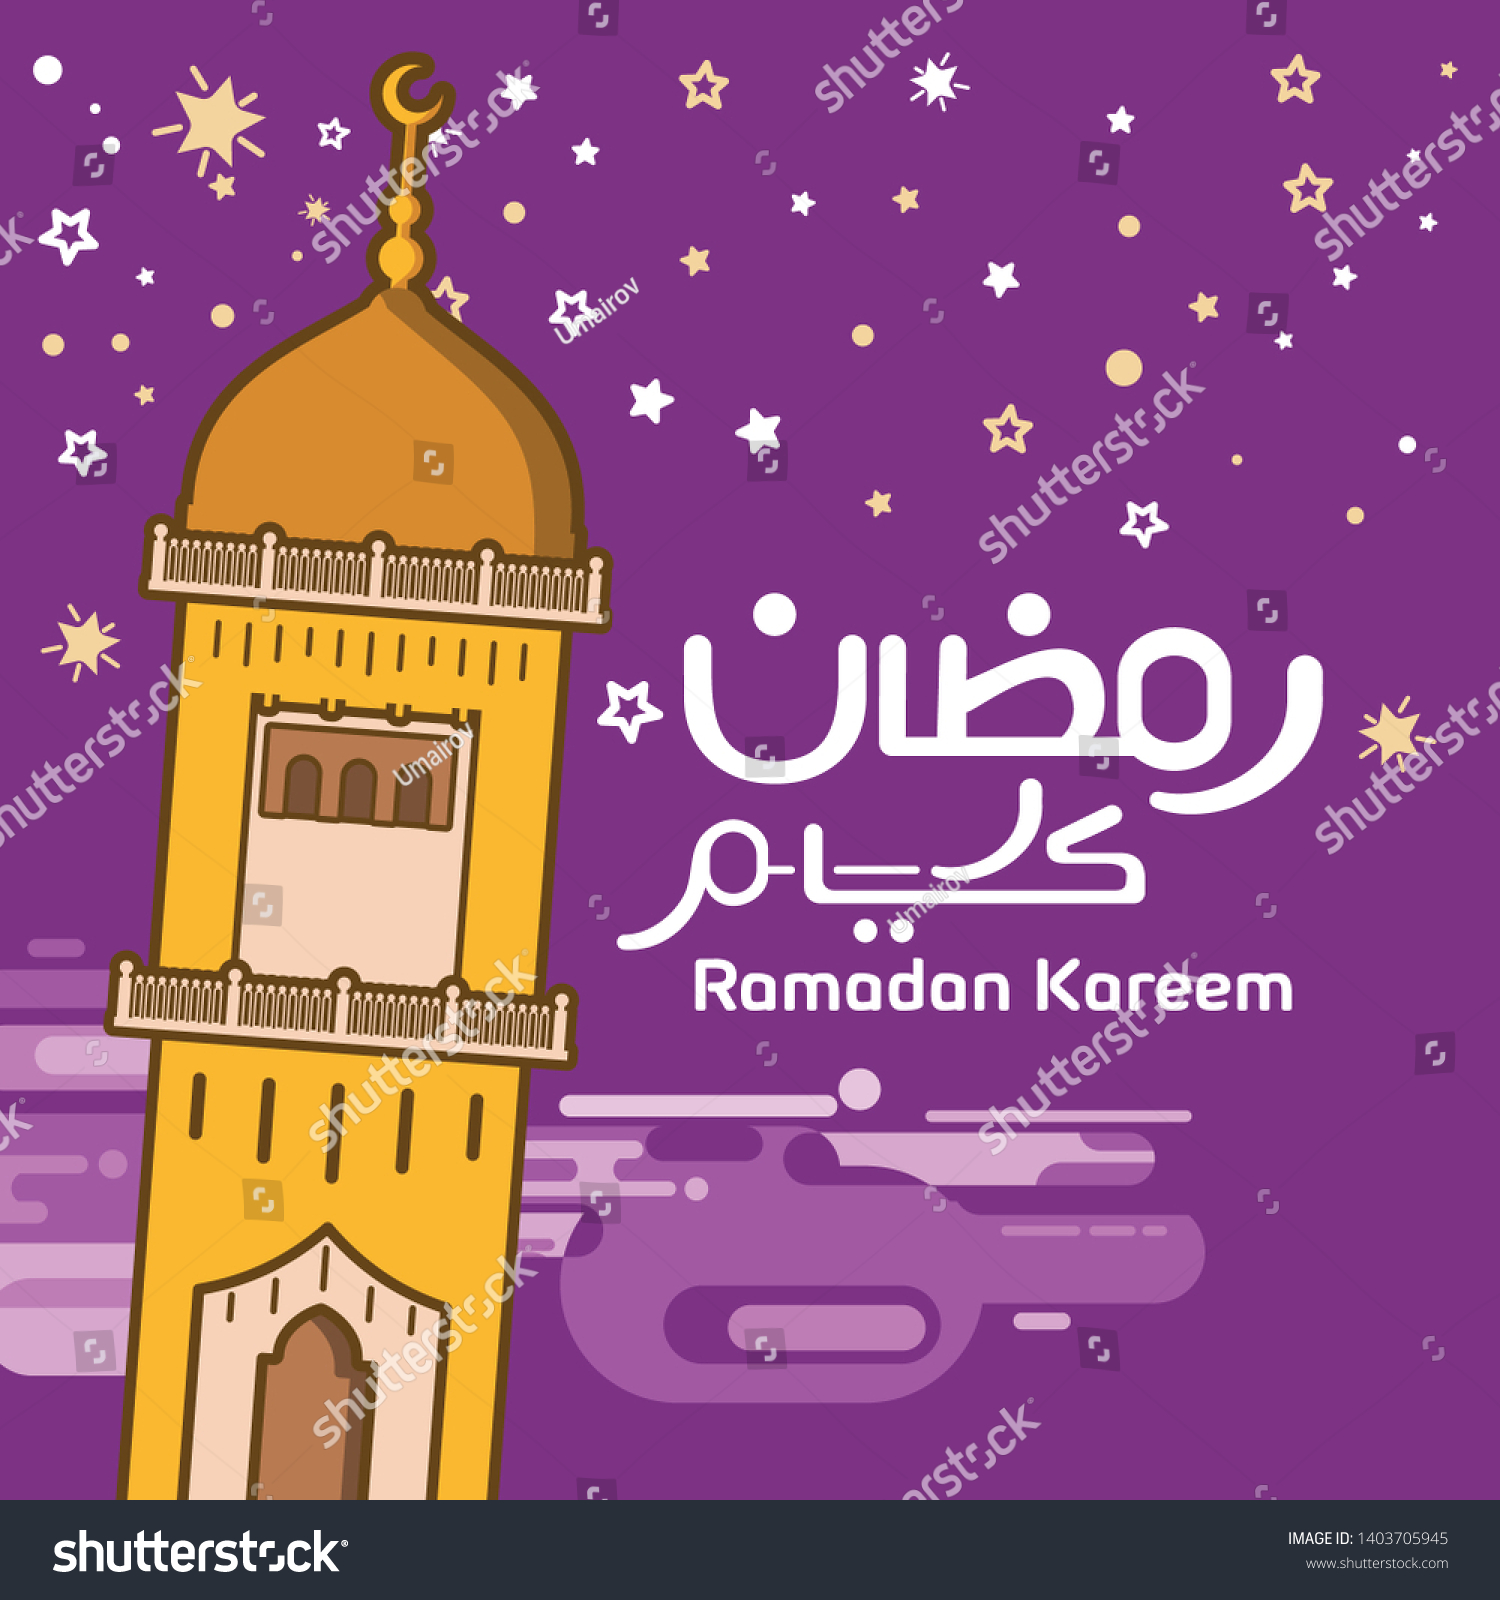 Template Poster Ramadhan Kareem Dengan Ilustrasi Stock Vector